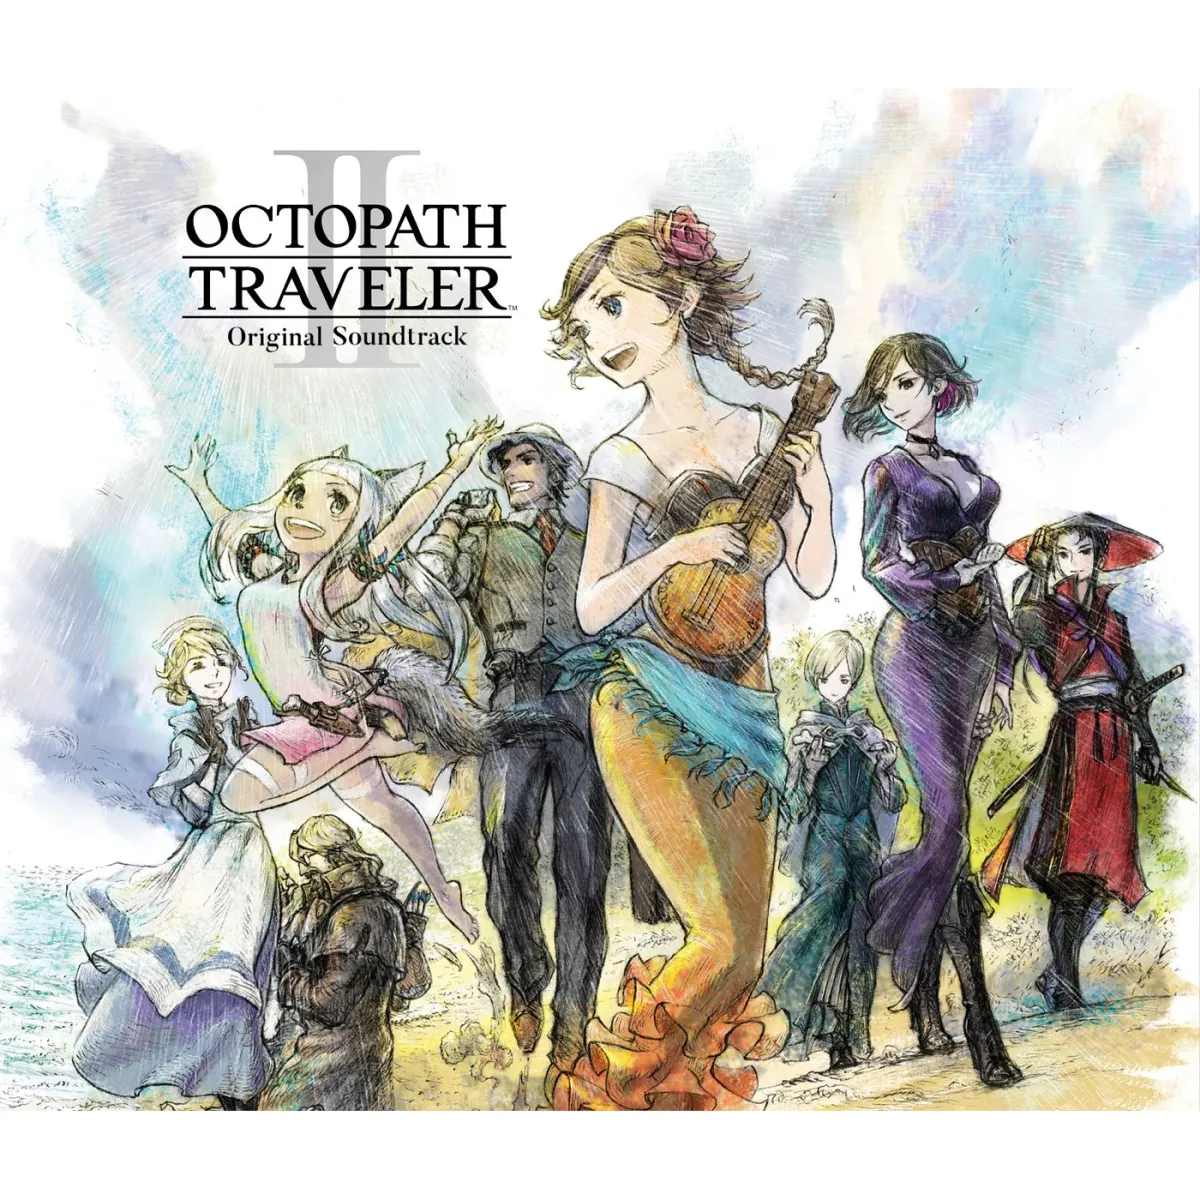 Octopath Traveler 2 Soundtrack Spans 6 CDs